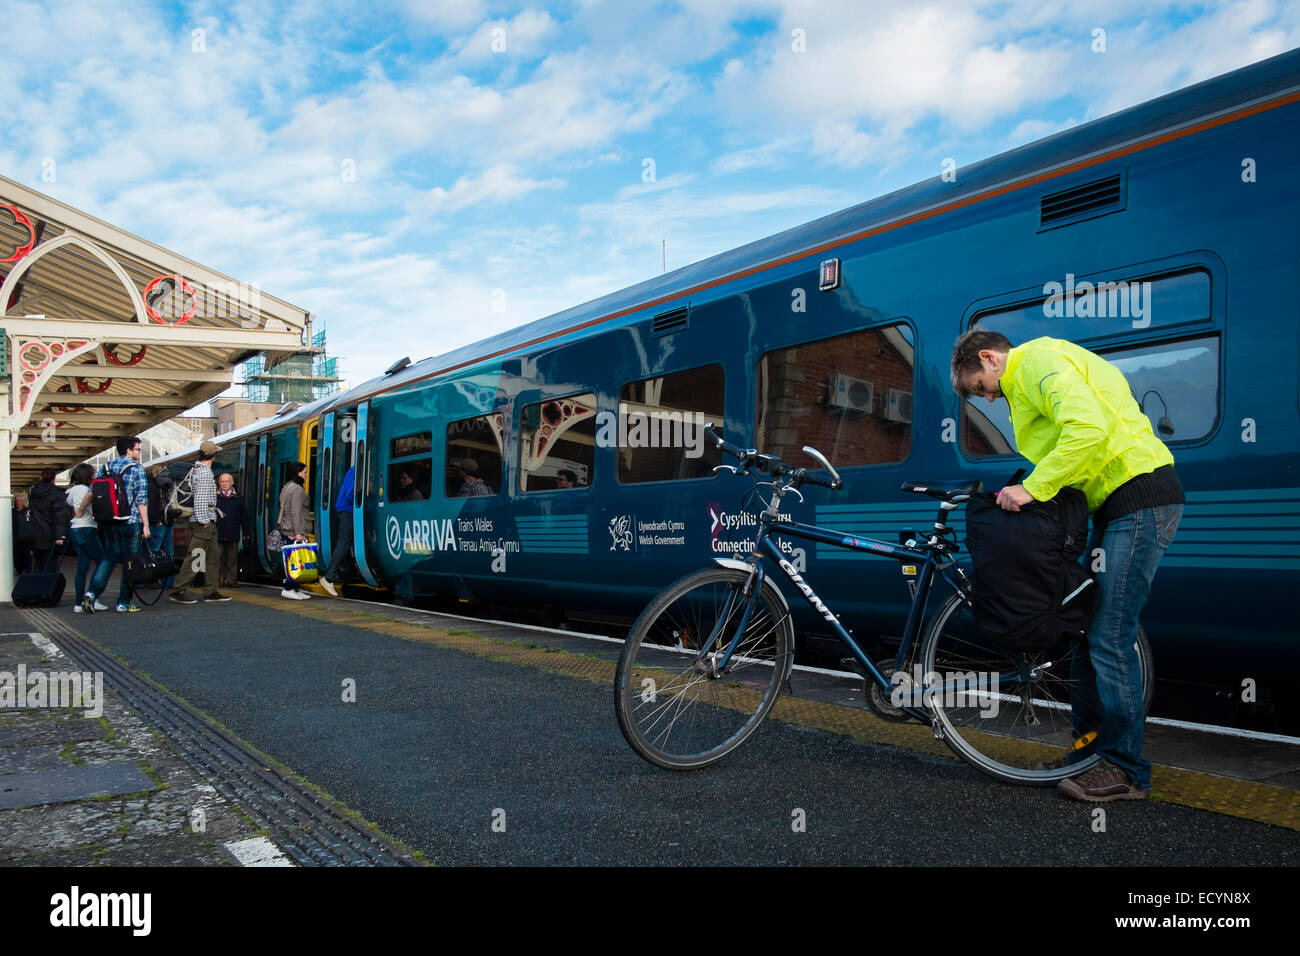 Afhankelijk Voorrecht Evacuatie Bike trains hi-res stock photography and images - Alamy